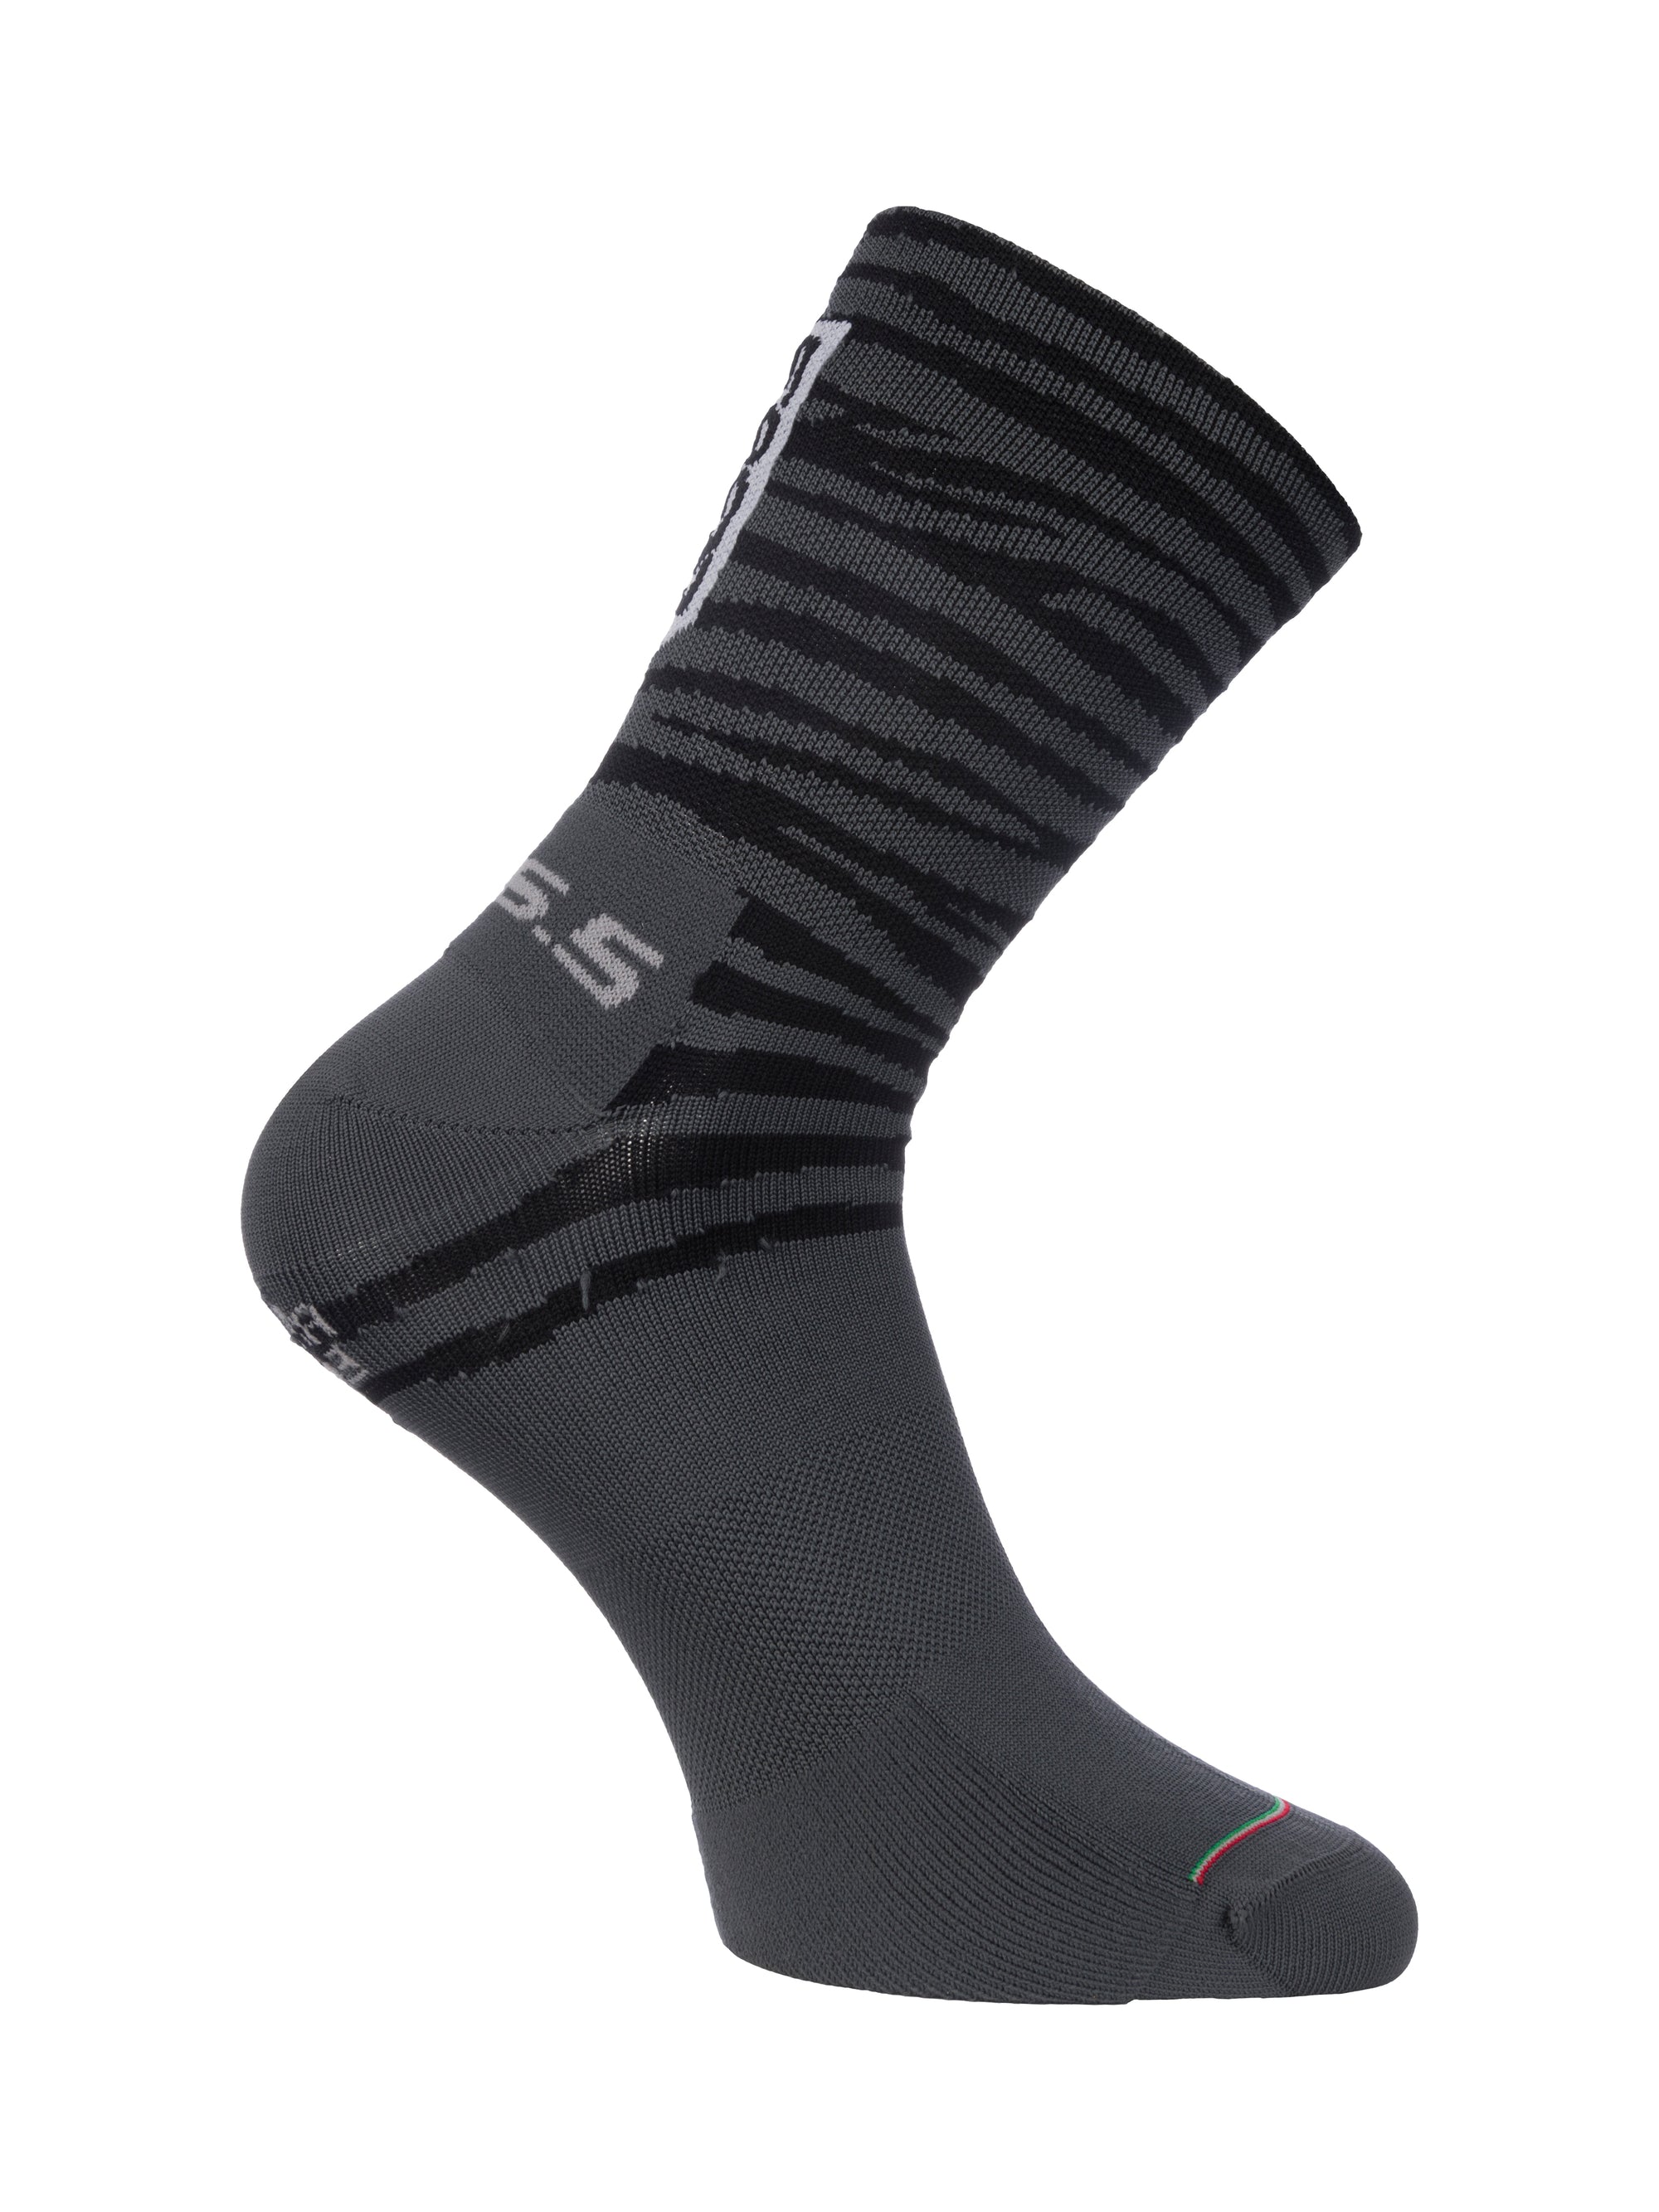 Q36.5 Ultra Tiger Cycling Socks in Black  (New)